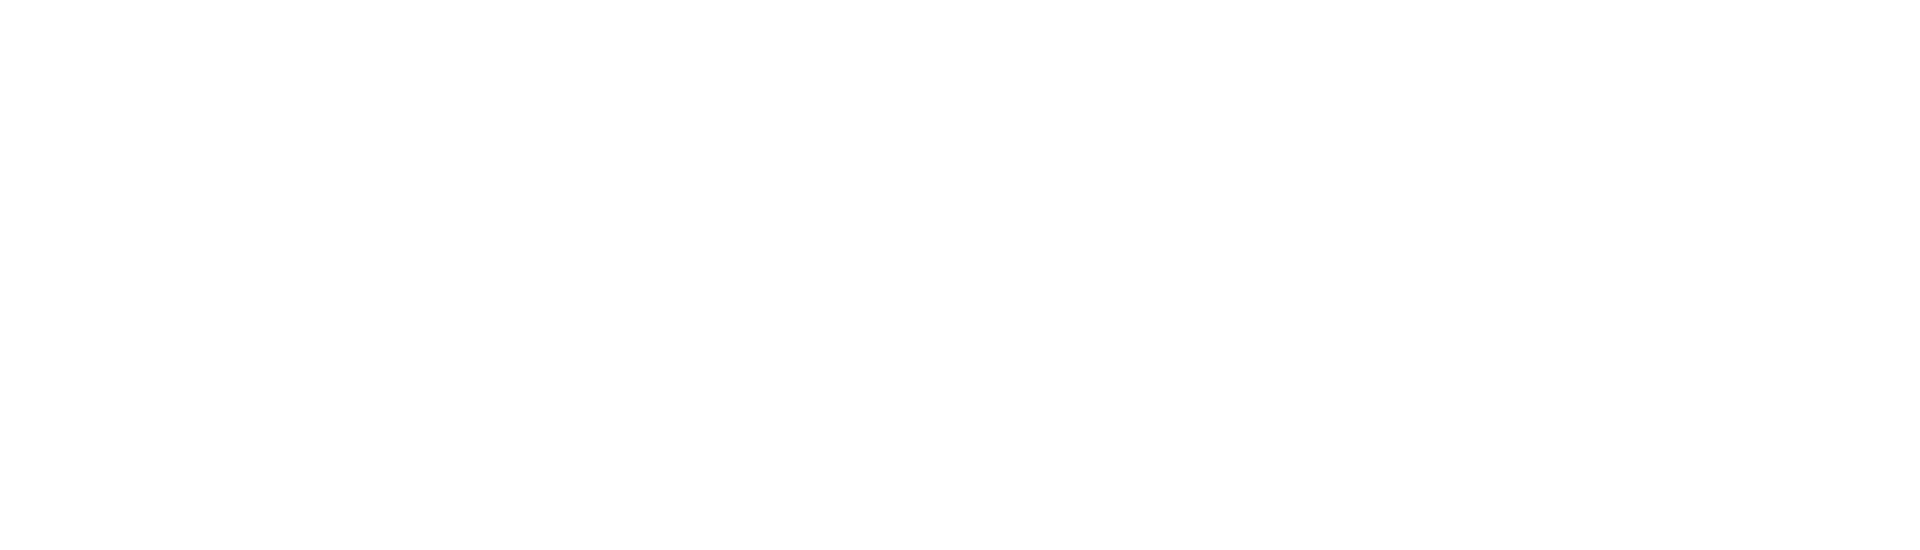 Logo IberAgenda en blanco con transparencia